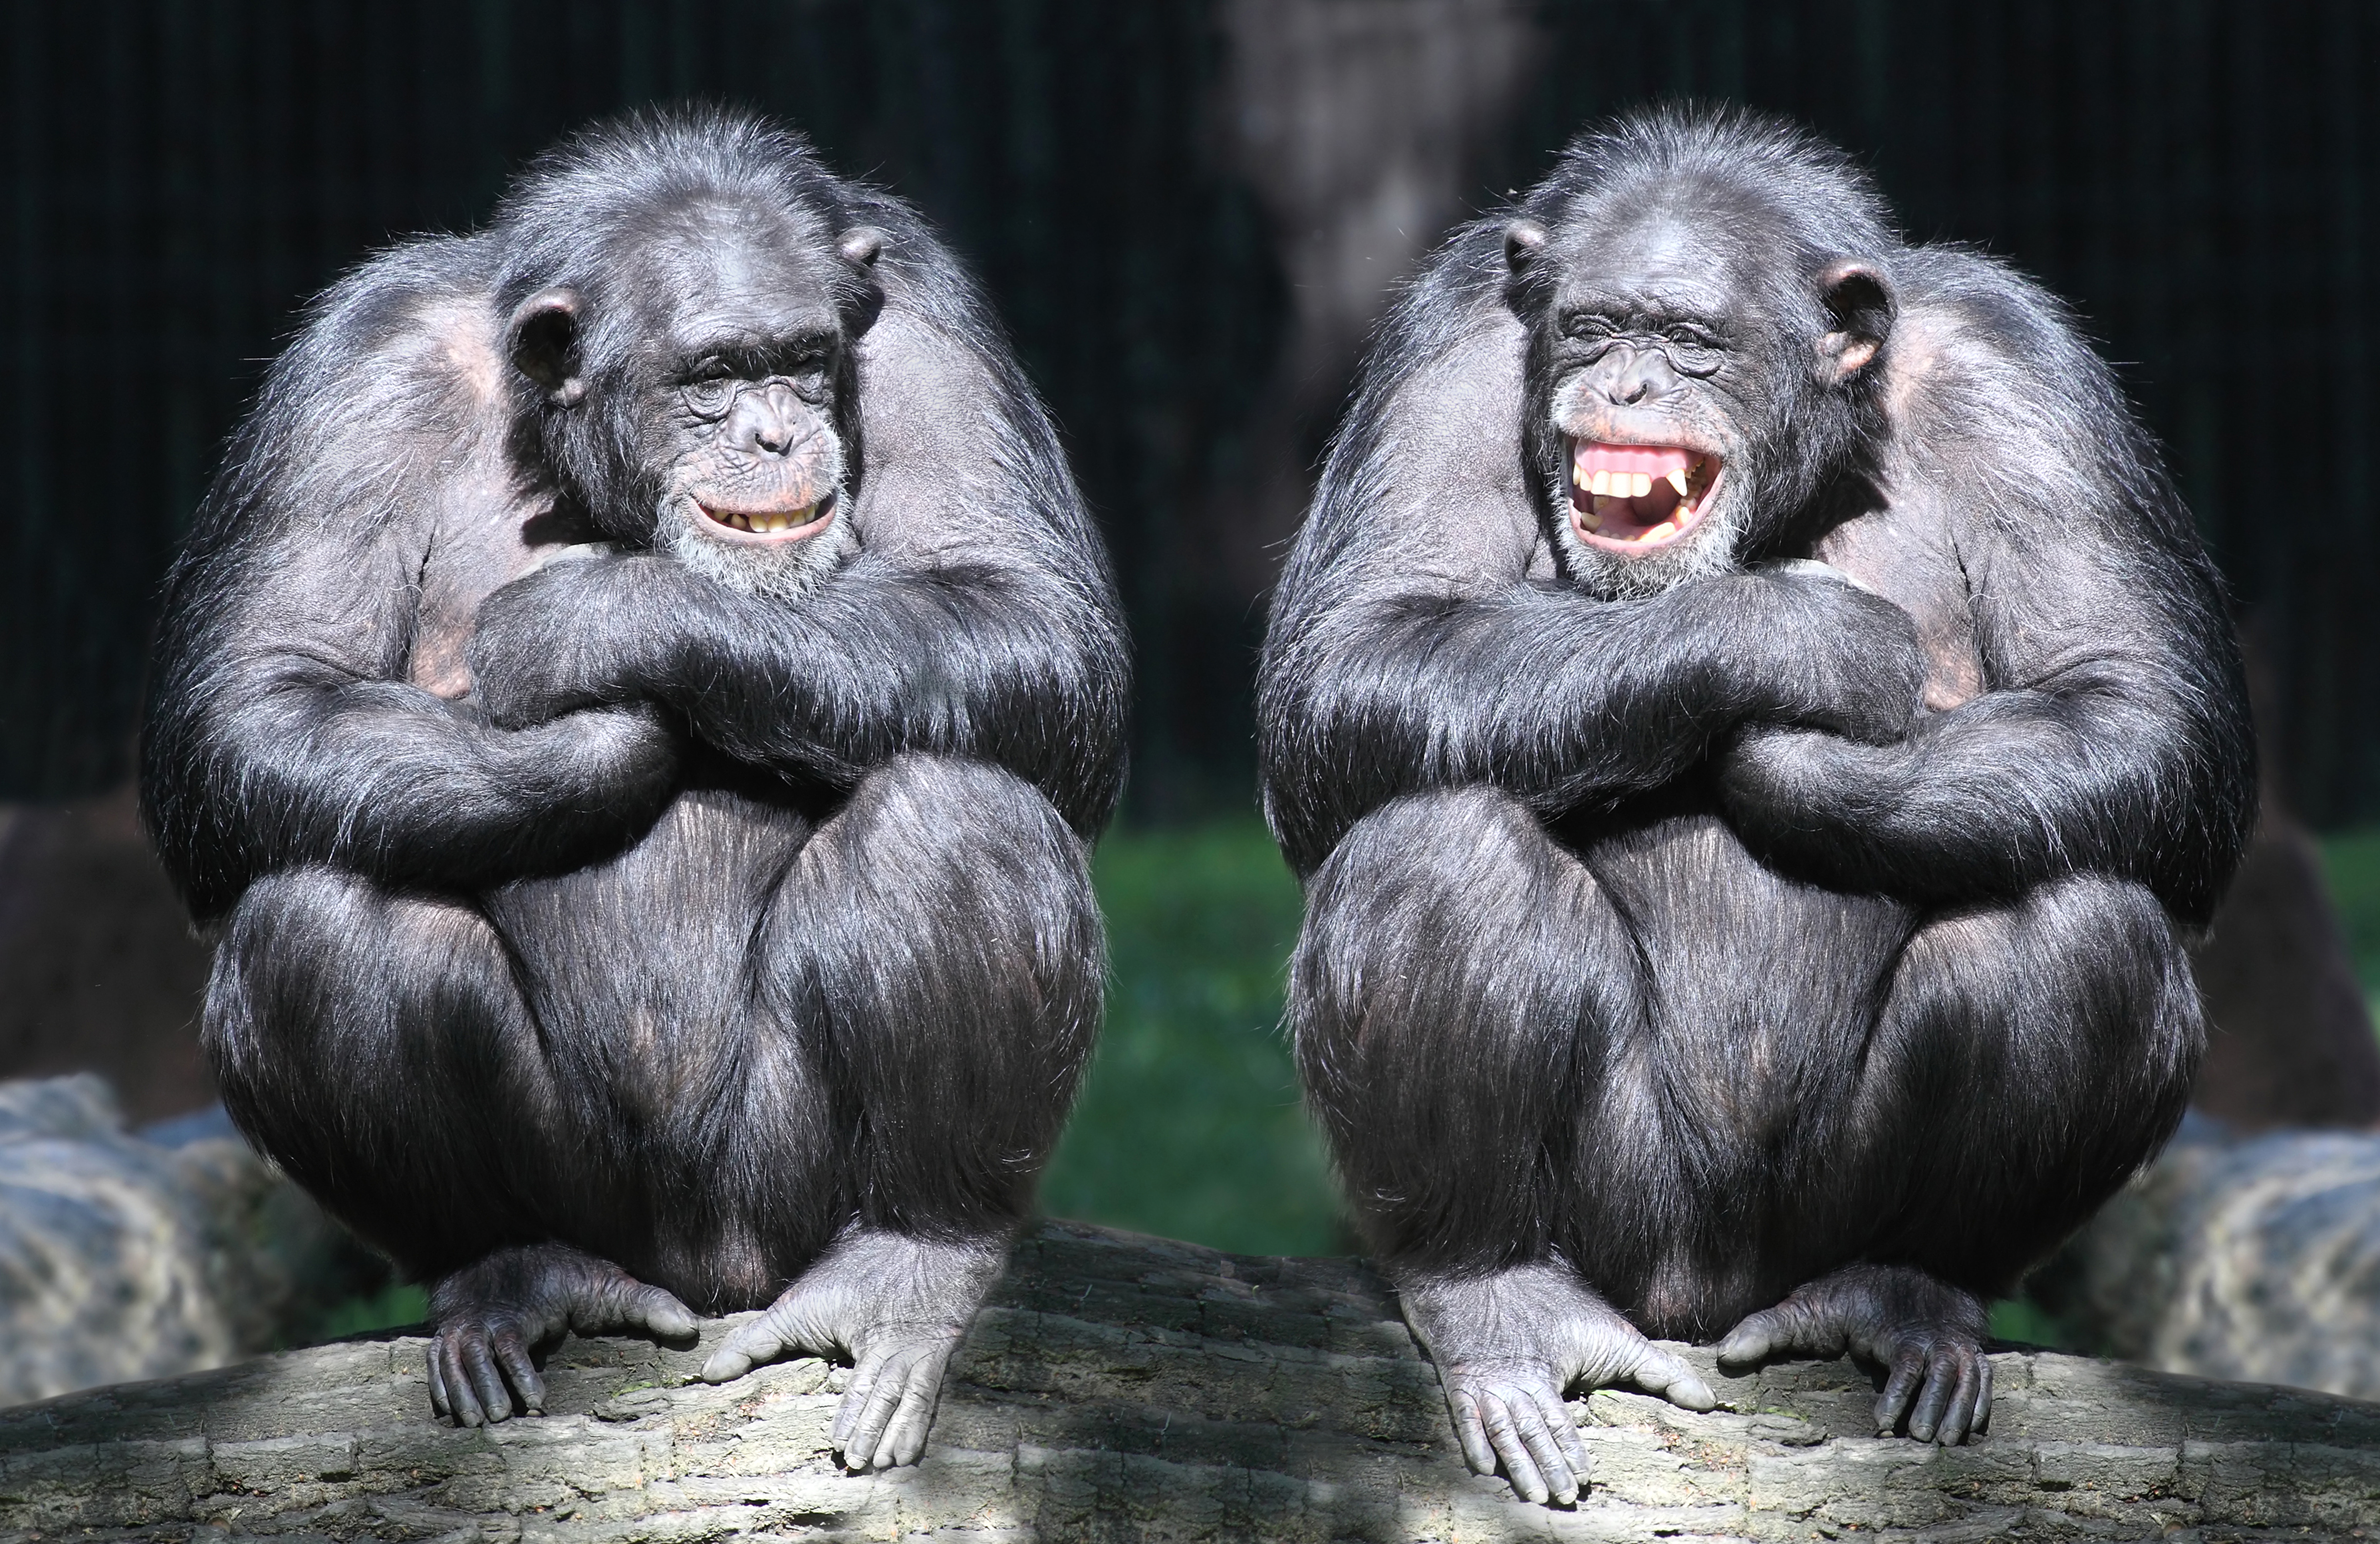 Скачать обои Бонобо на телефон бесплатно